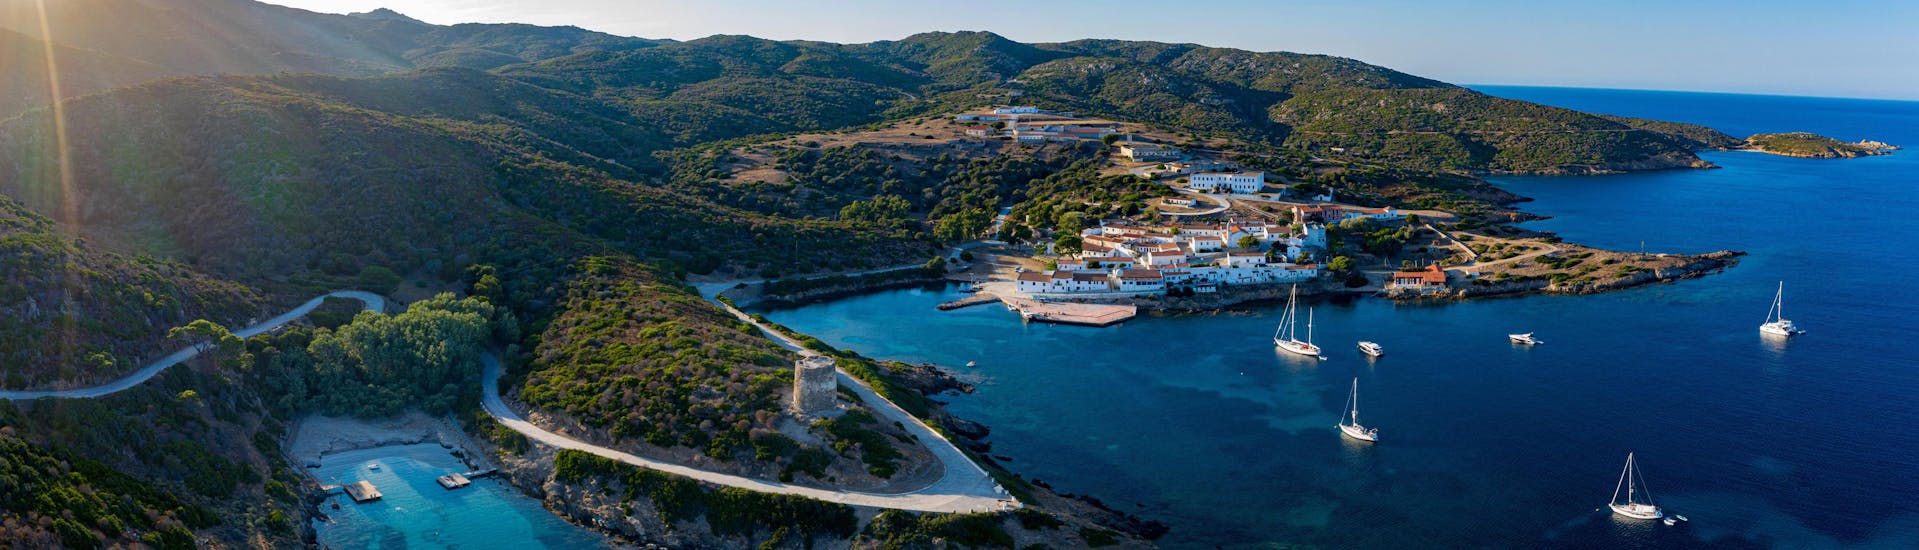 Vista aerea del Parco Nazionale dell’Asinara, una destinazione popolare per i giri in barca in Sardegna.